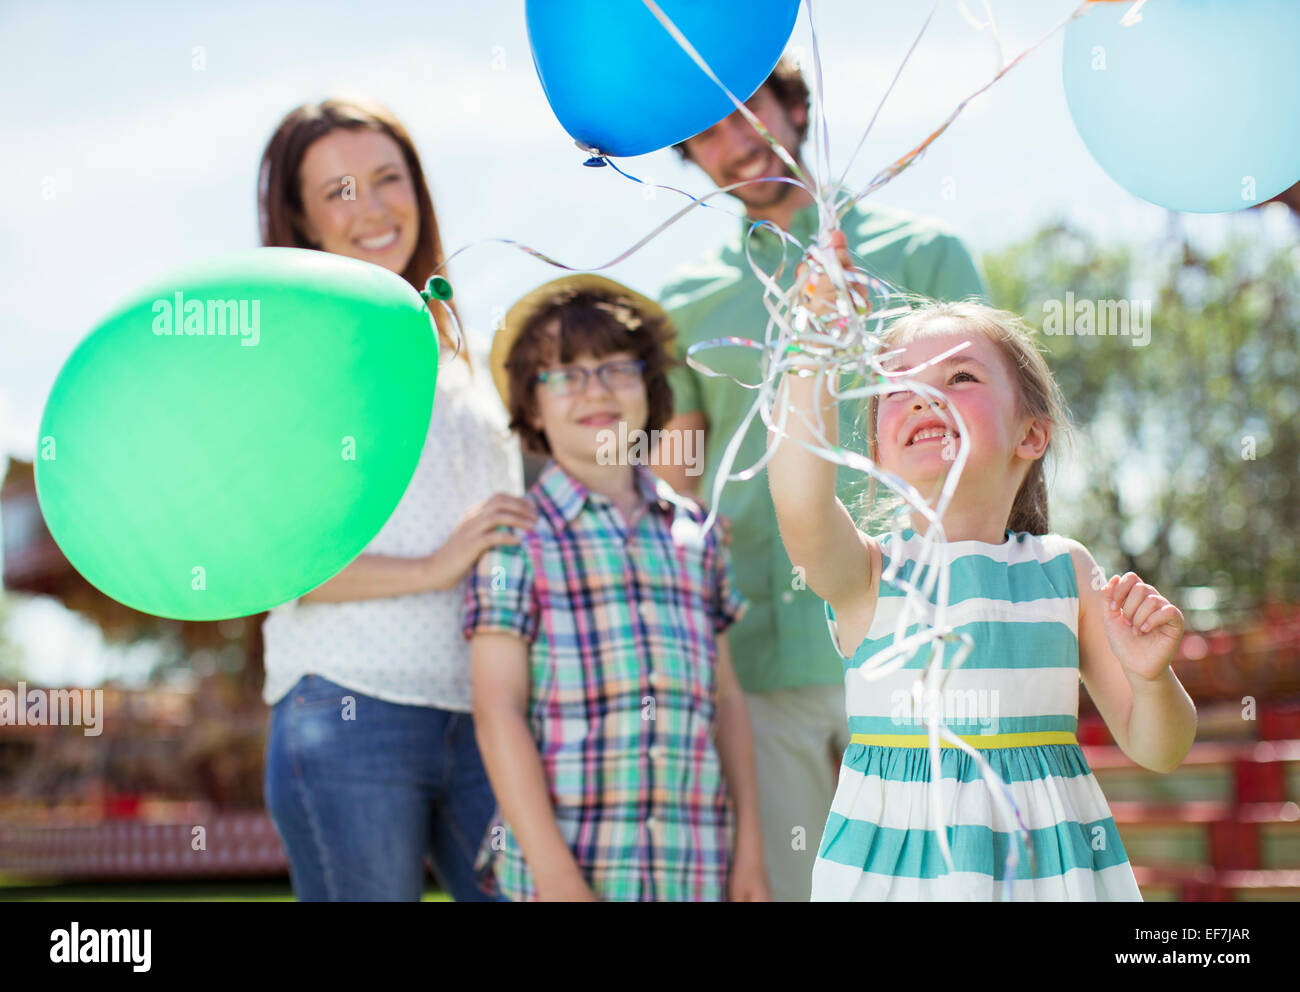 Junges Mädchen hält Haufen Luftballons, Familie, die hinter ihr stehen Stockfoto